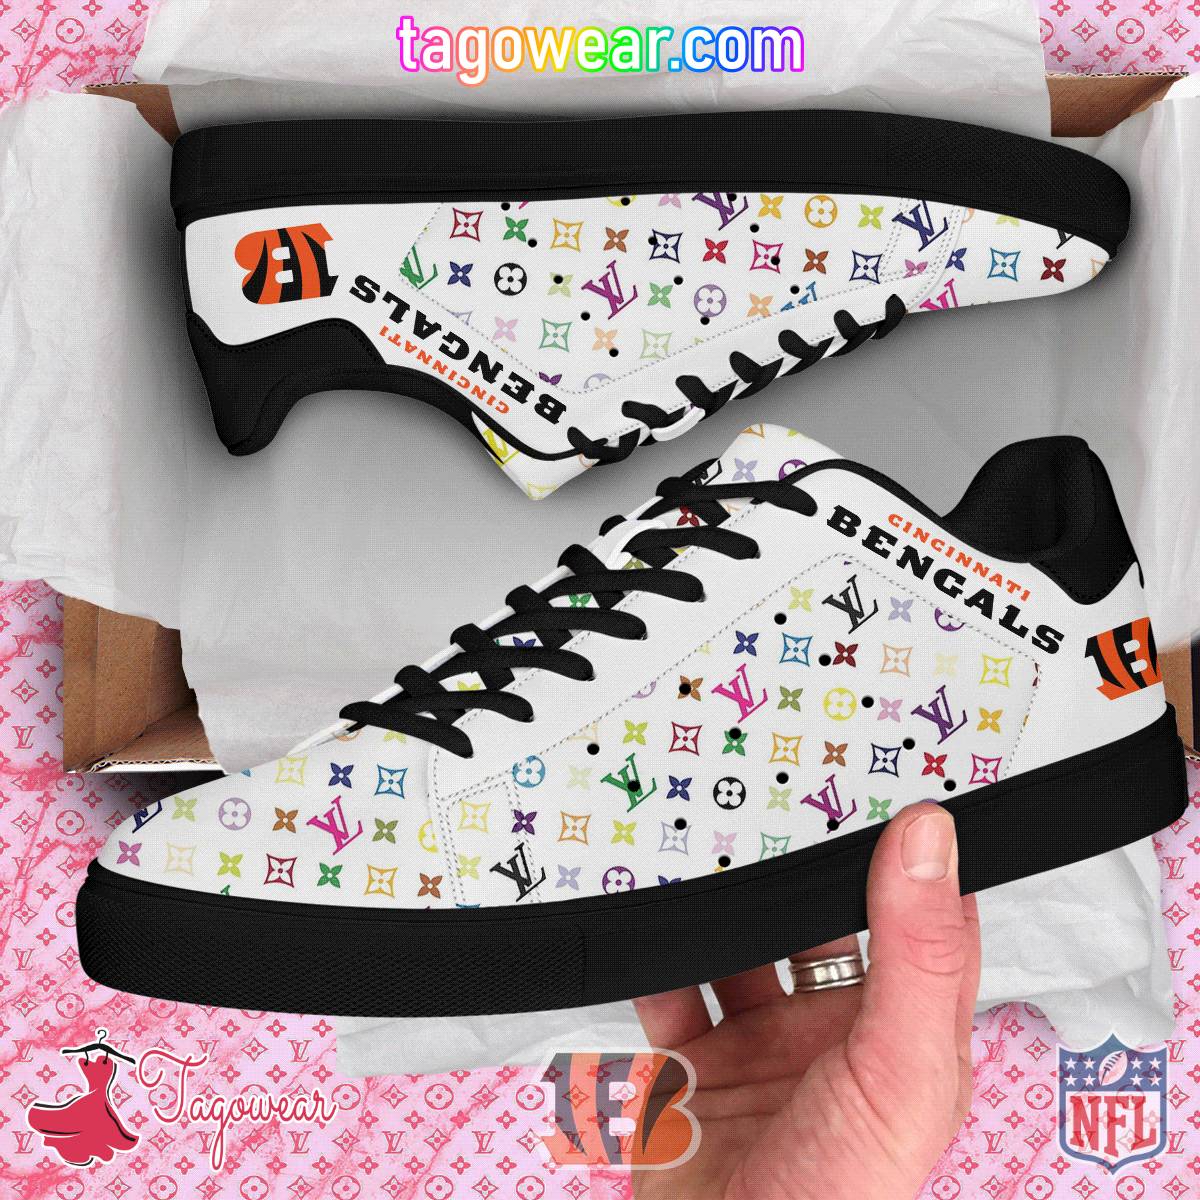 Cincinnati Bengals NFL Louis Vuitton Stan Smith Shoes a